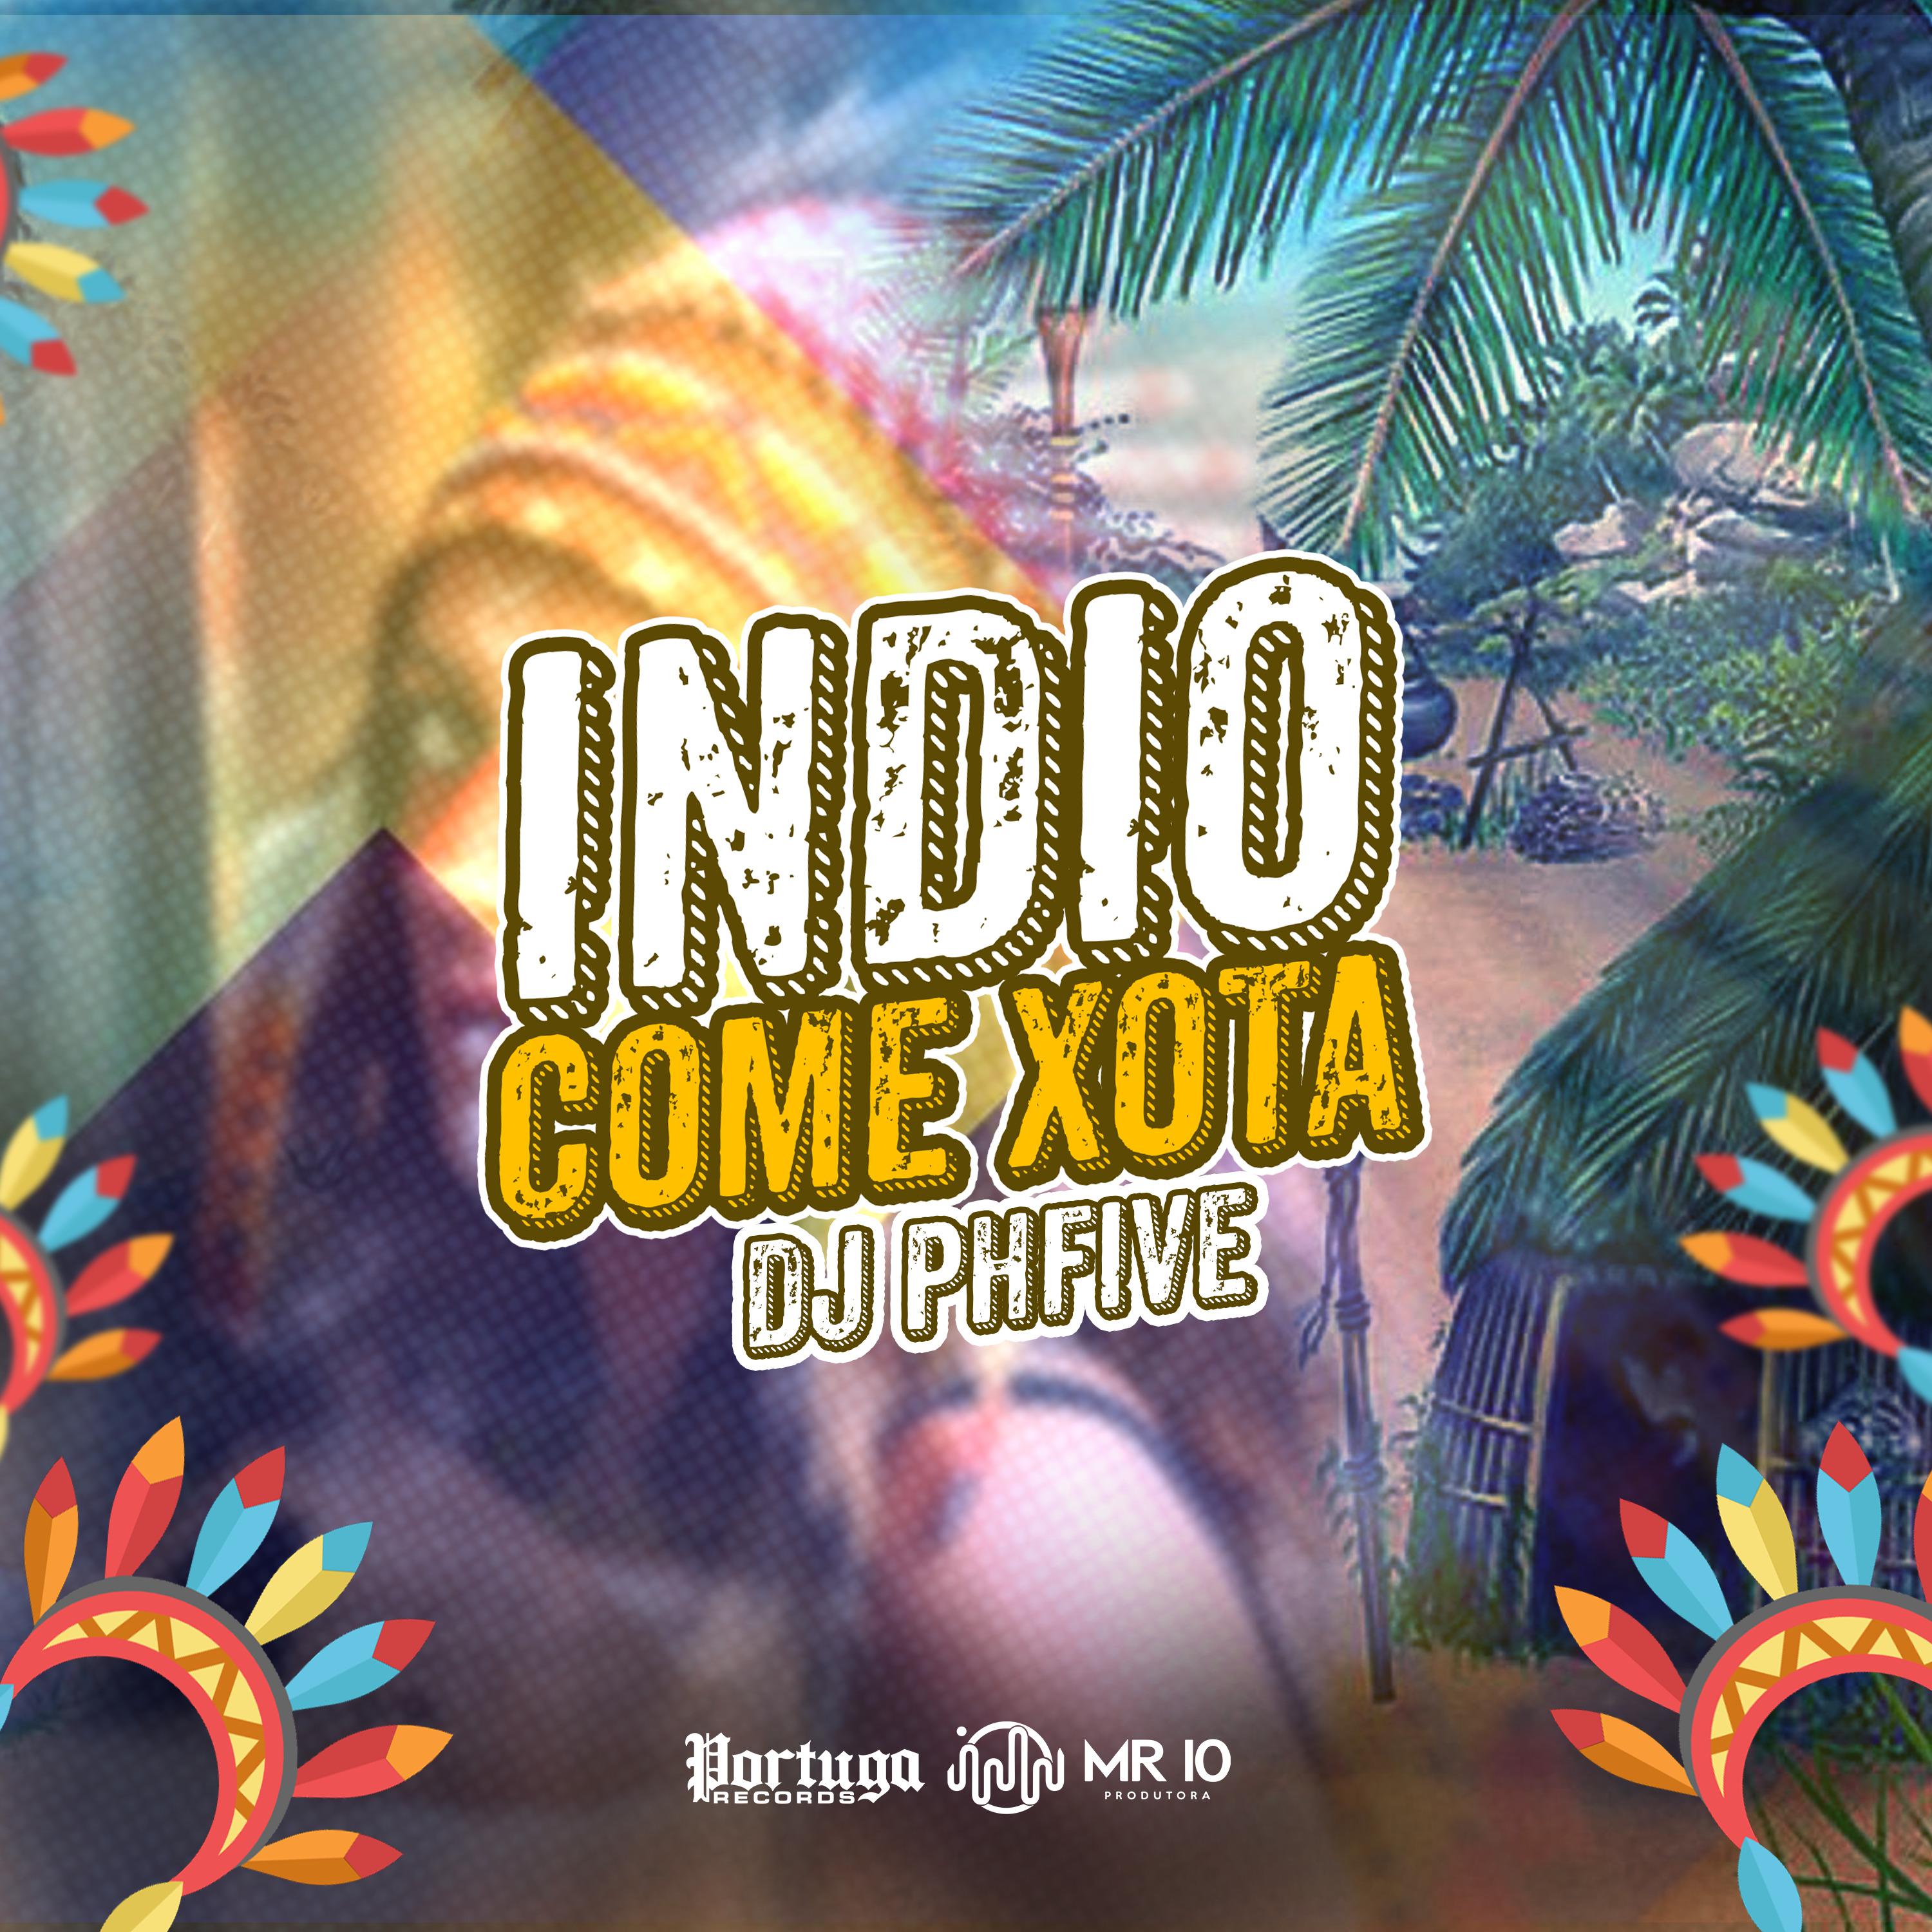 Постер альбома Indio Come Xota